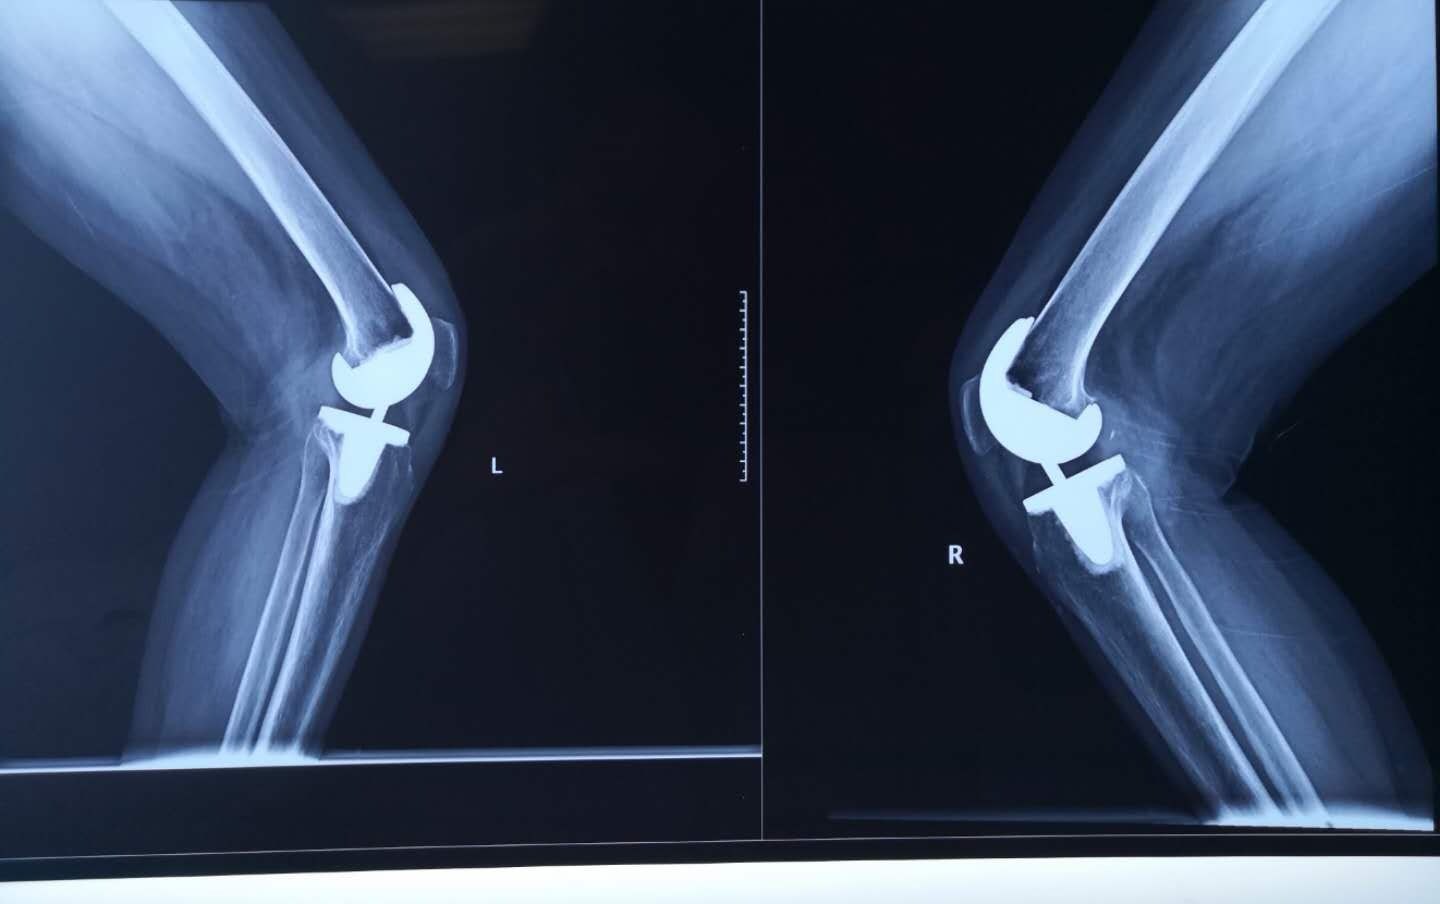 术后双膝关节正位x片可见关节骨赘清除彻底,双下肢力线良好.